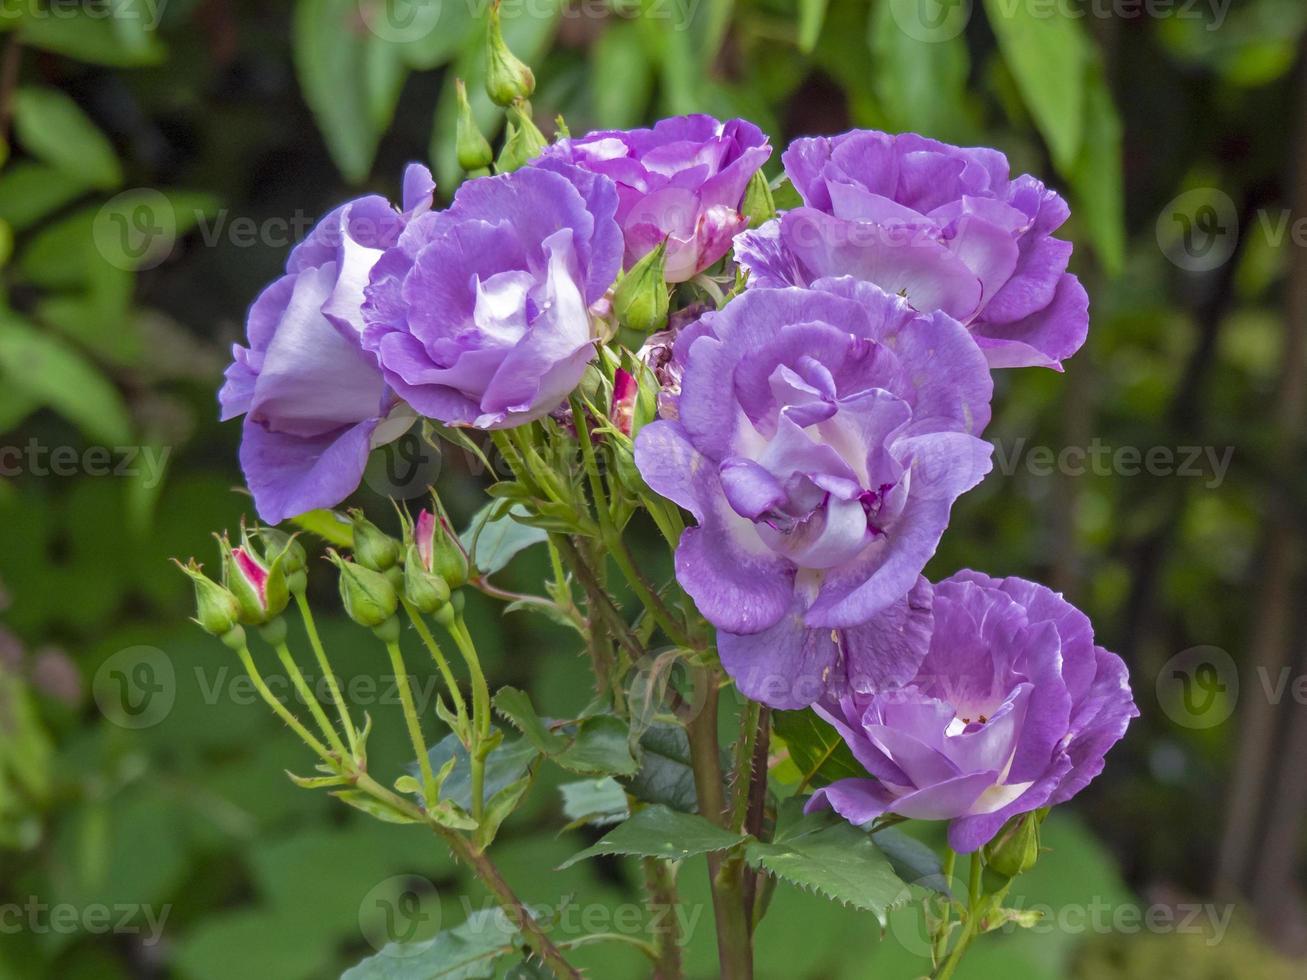 Rhapsody in Blue rose blooms in a garden photo